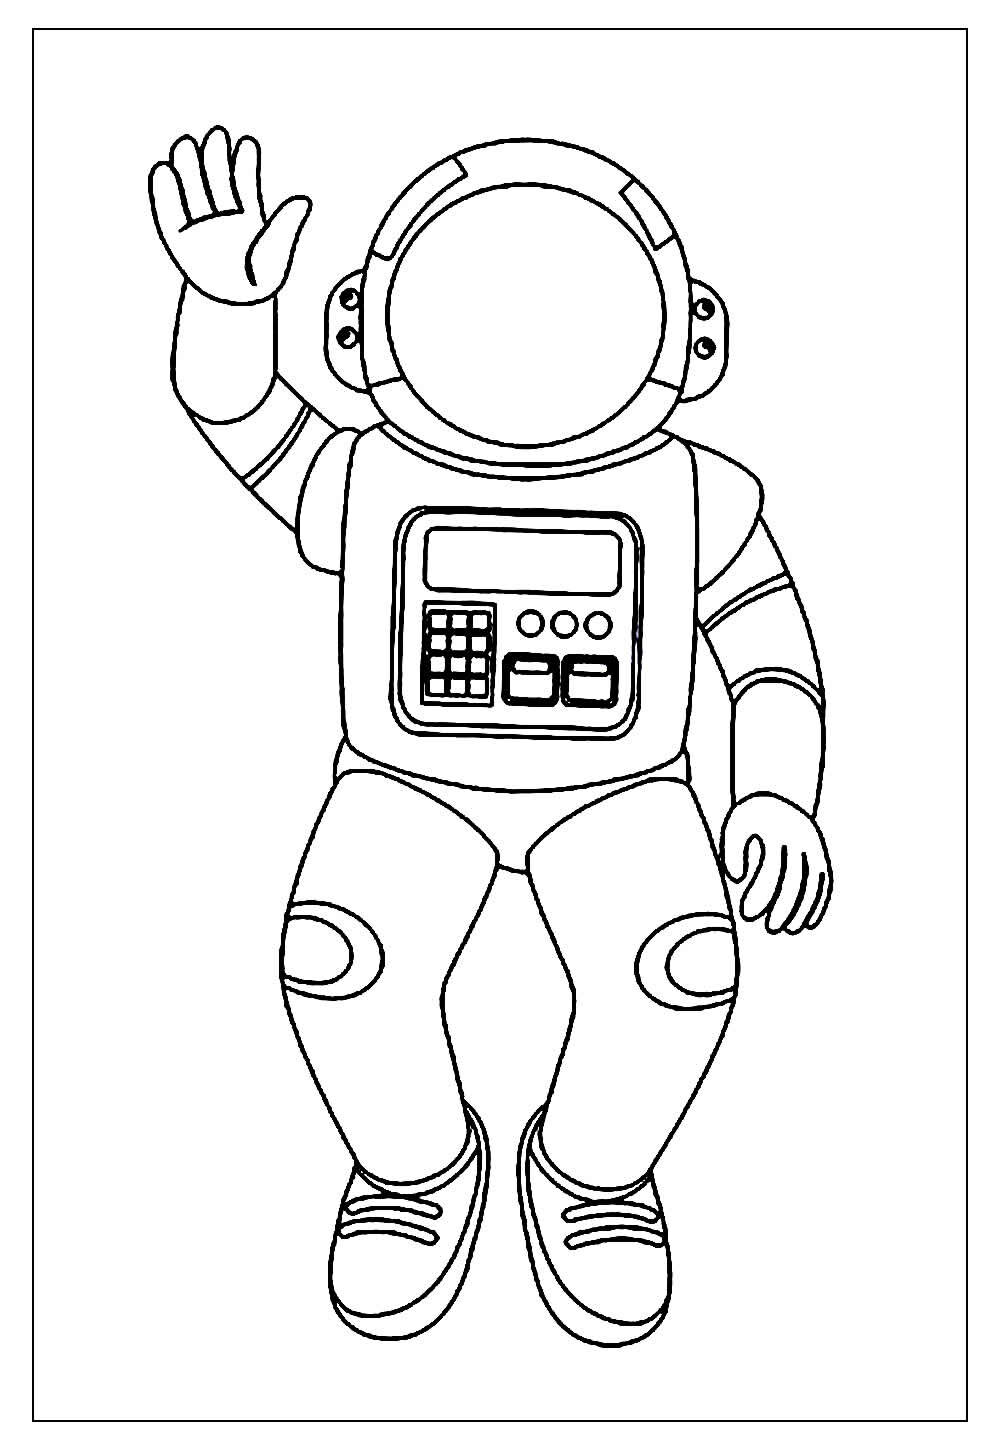 desenho de astronauta e ufo para colorir para crianças 10993616